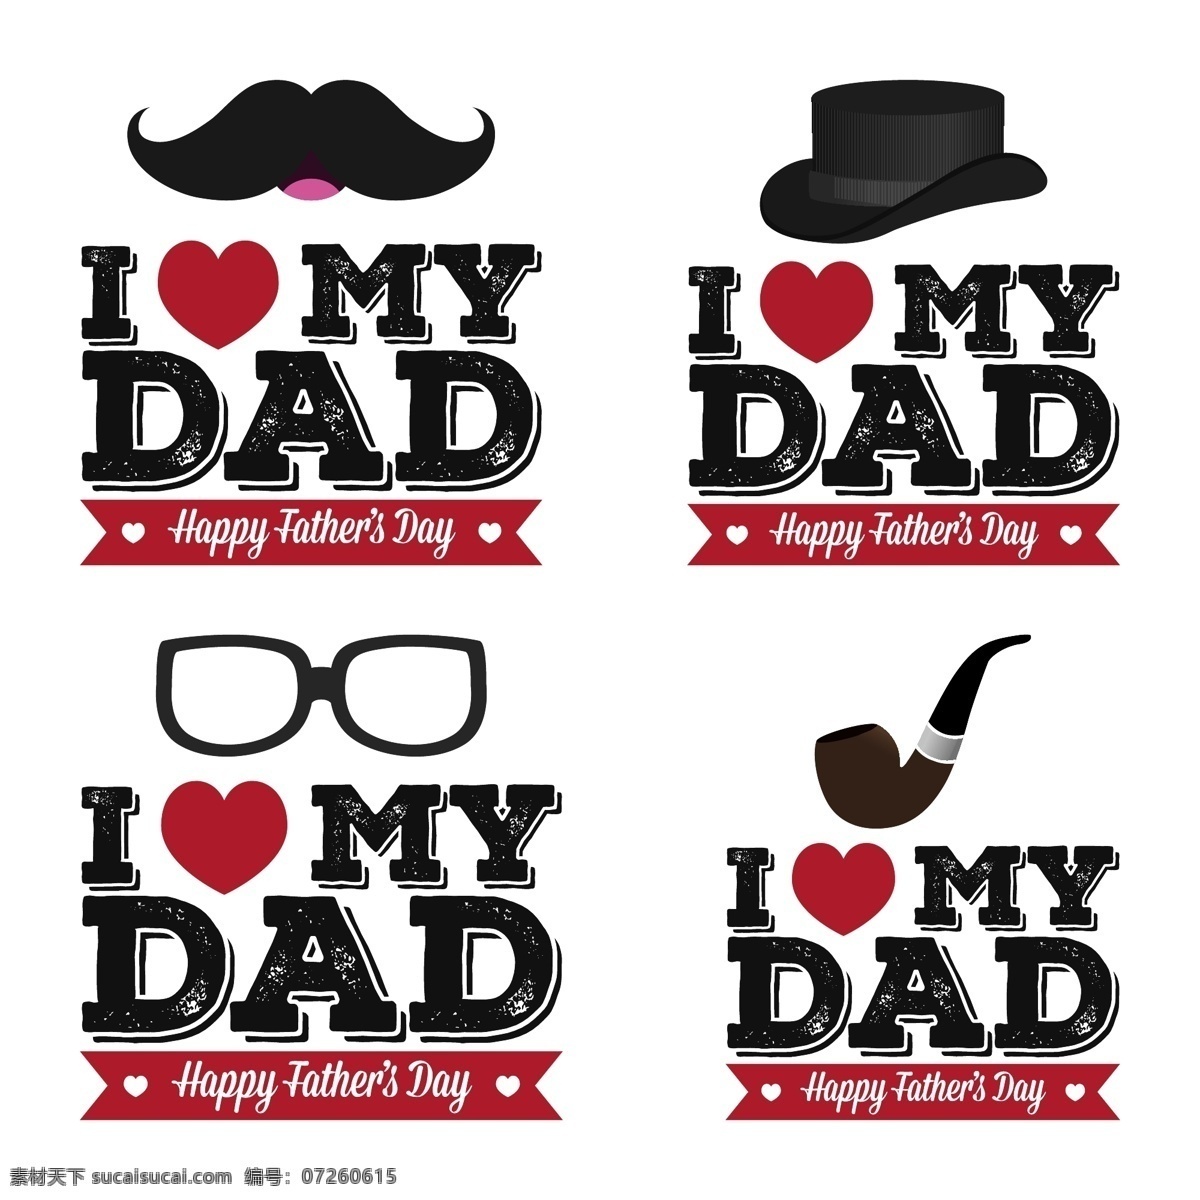 创意 眼镜 胡子 帽子 父亲节 元素 卡通 爱心 父亲节素材 父亲节图案 父亲节背景 父亲节设计 烟斗